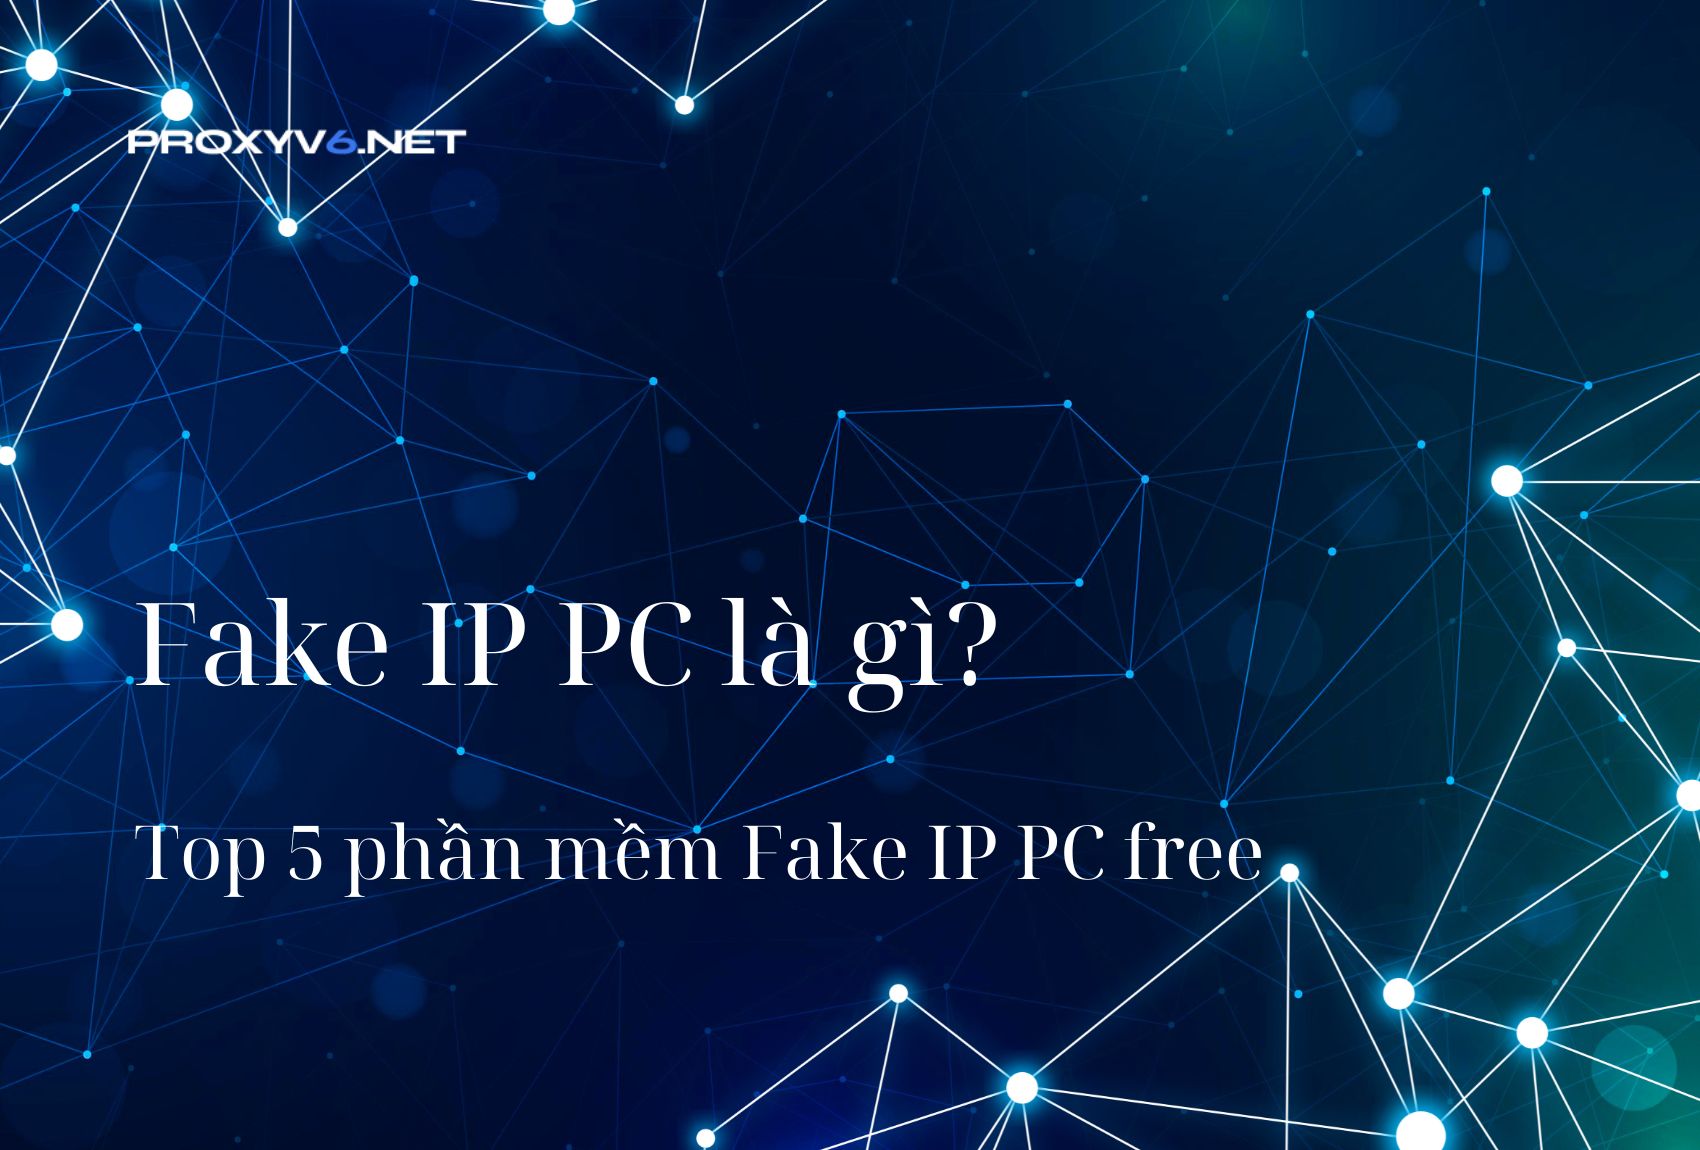 Fake IP PC là gì? Top 5 phần mềm Fake IP PC free